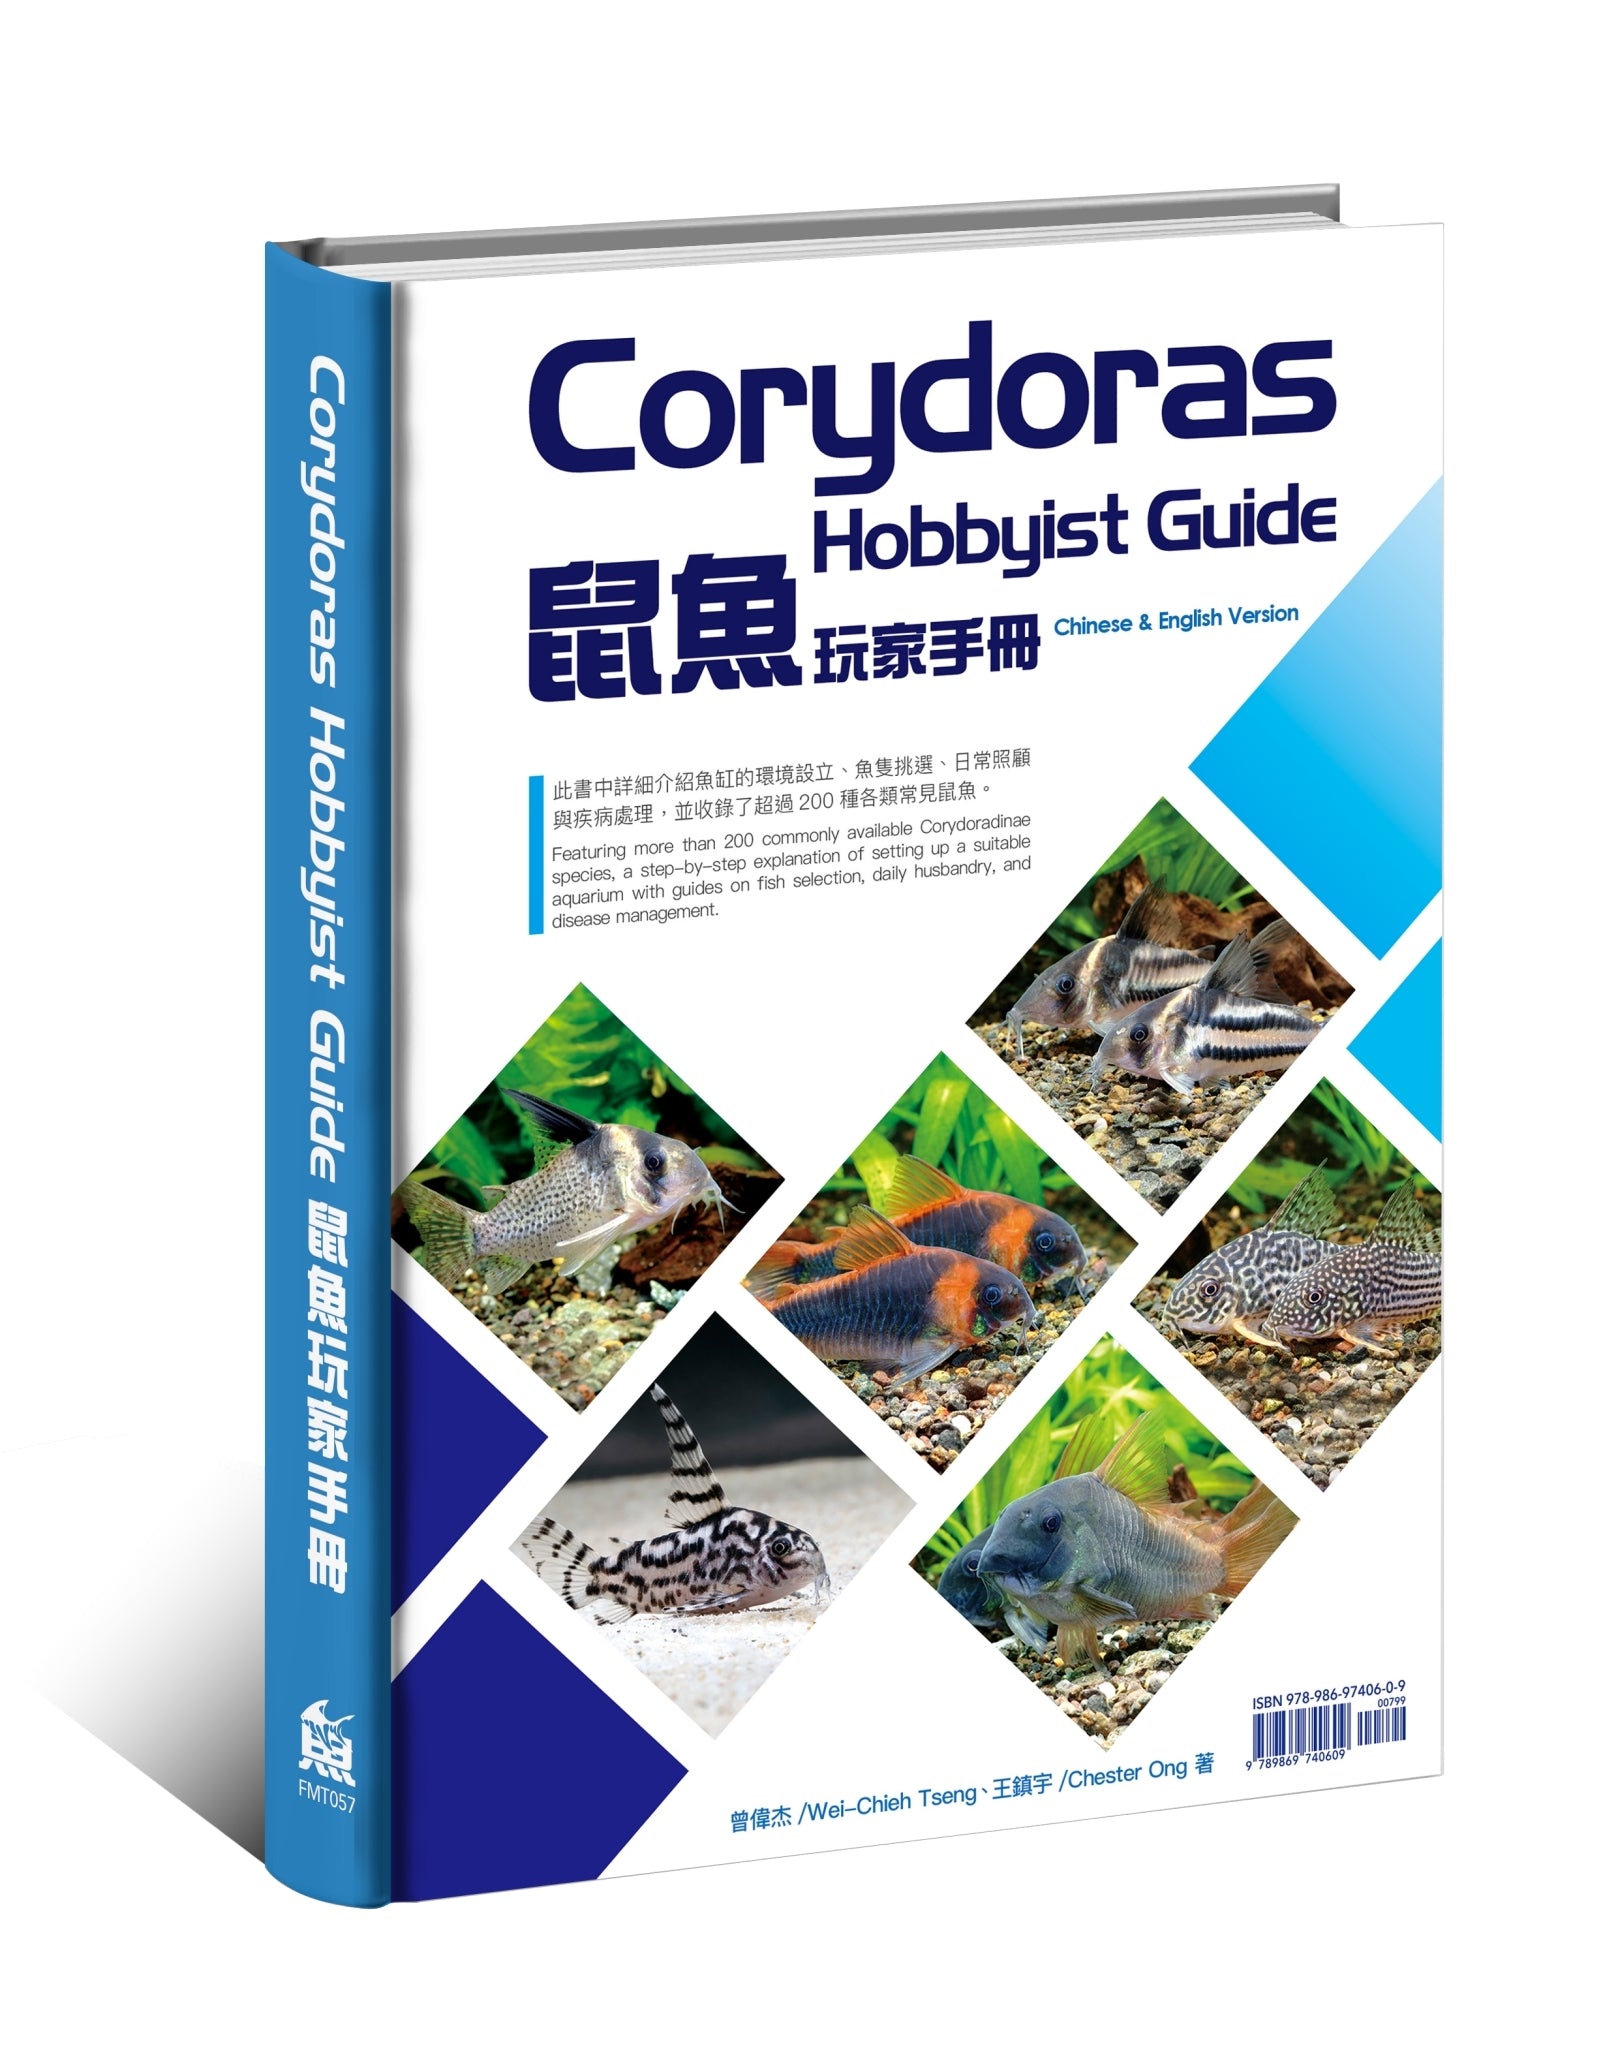 Corydoras Hobbyist Guide